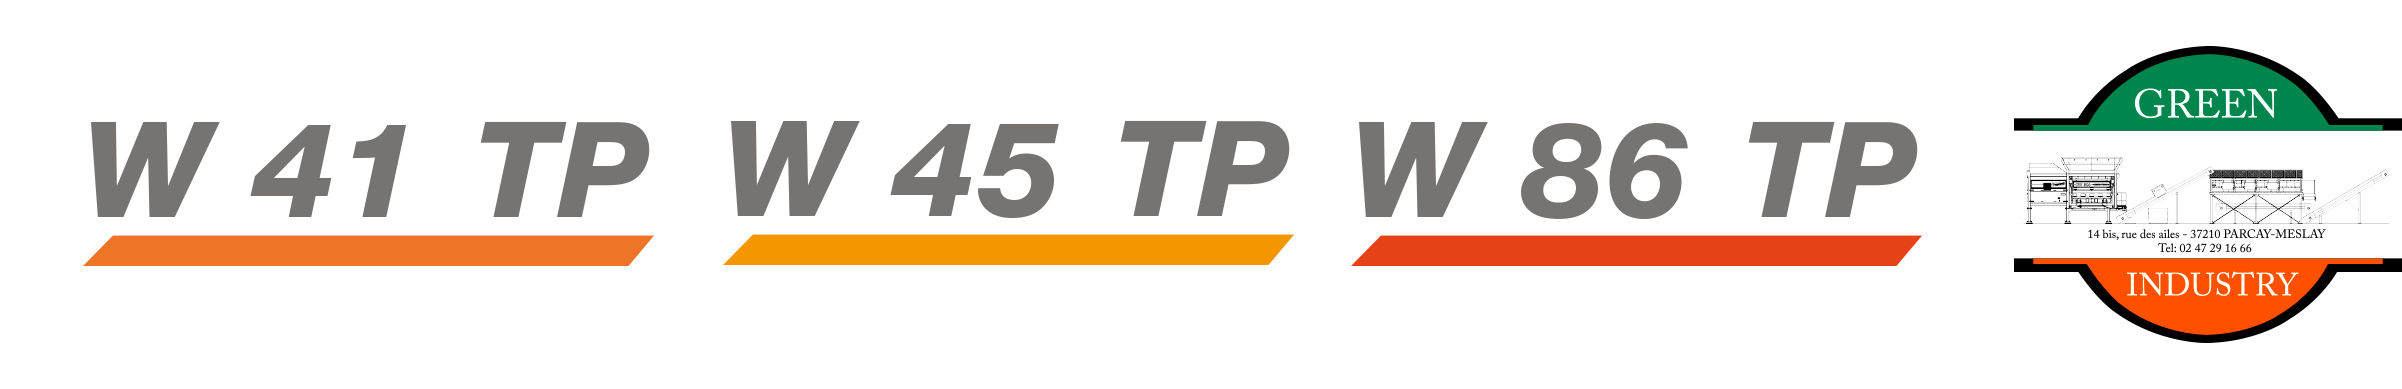 W41TP